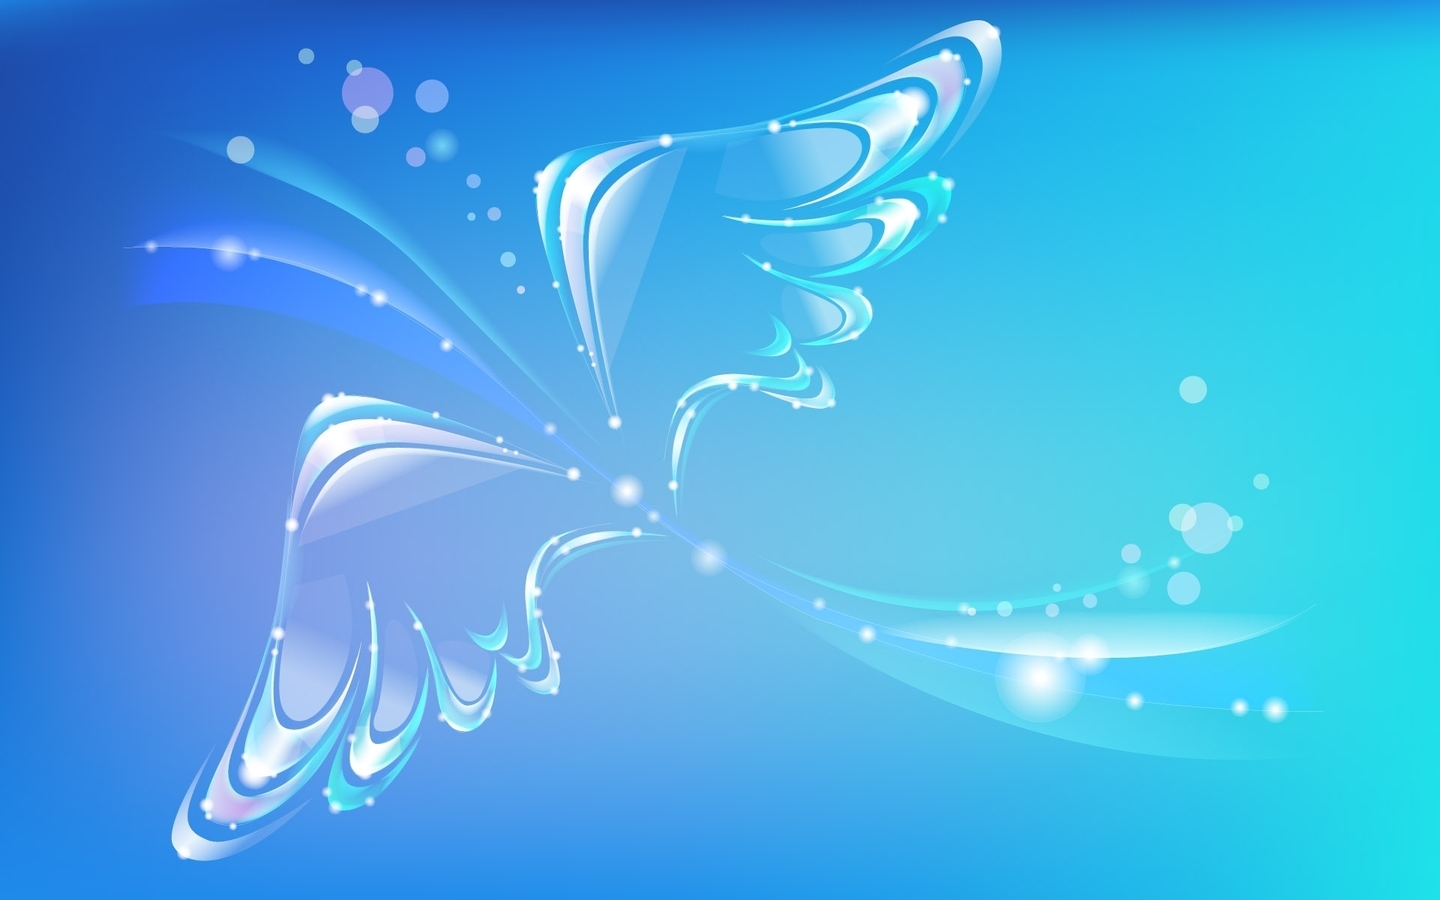 Картинка: Крылья, полёт, блики, изгиб, голубой фон